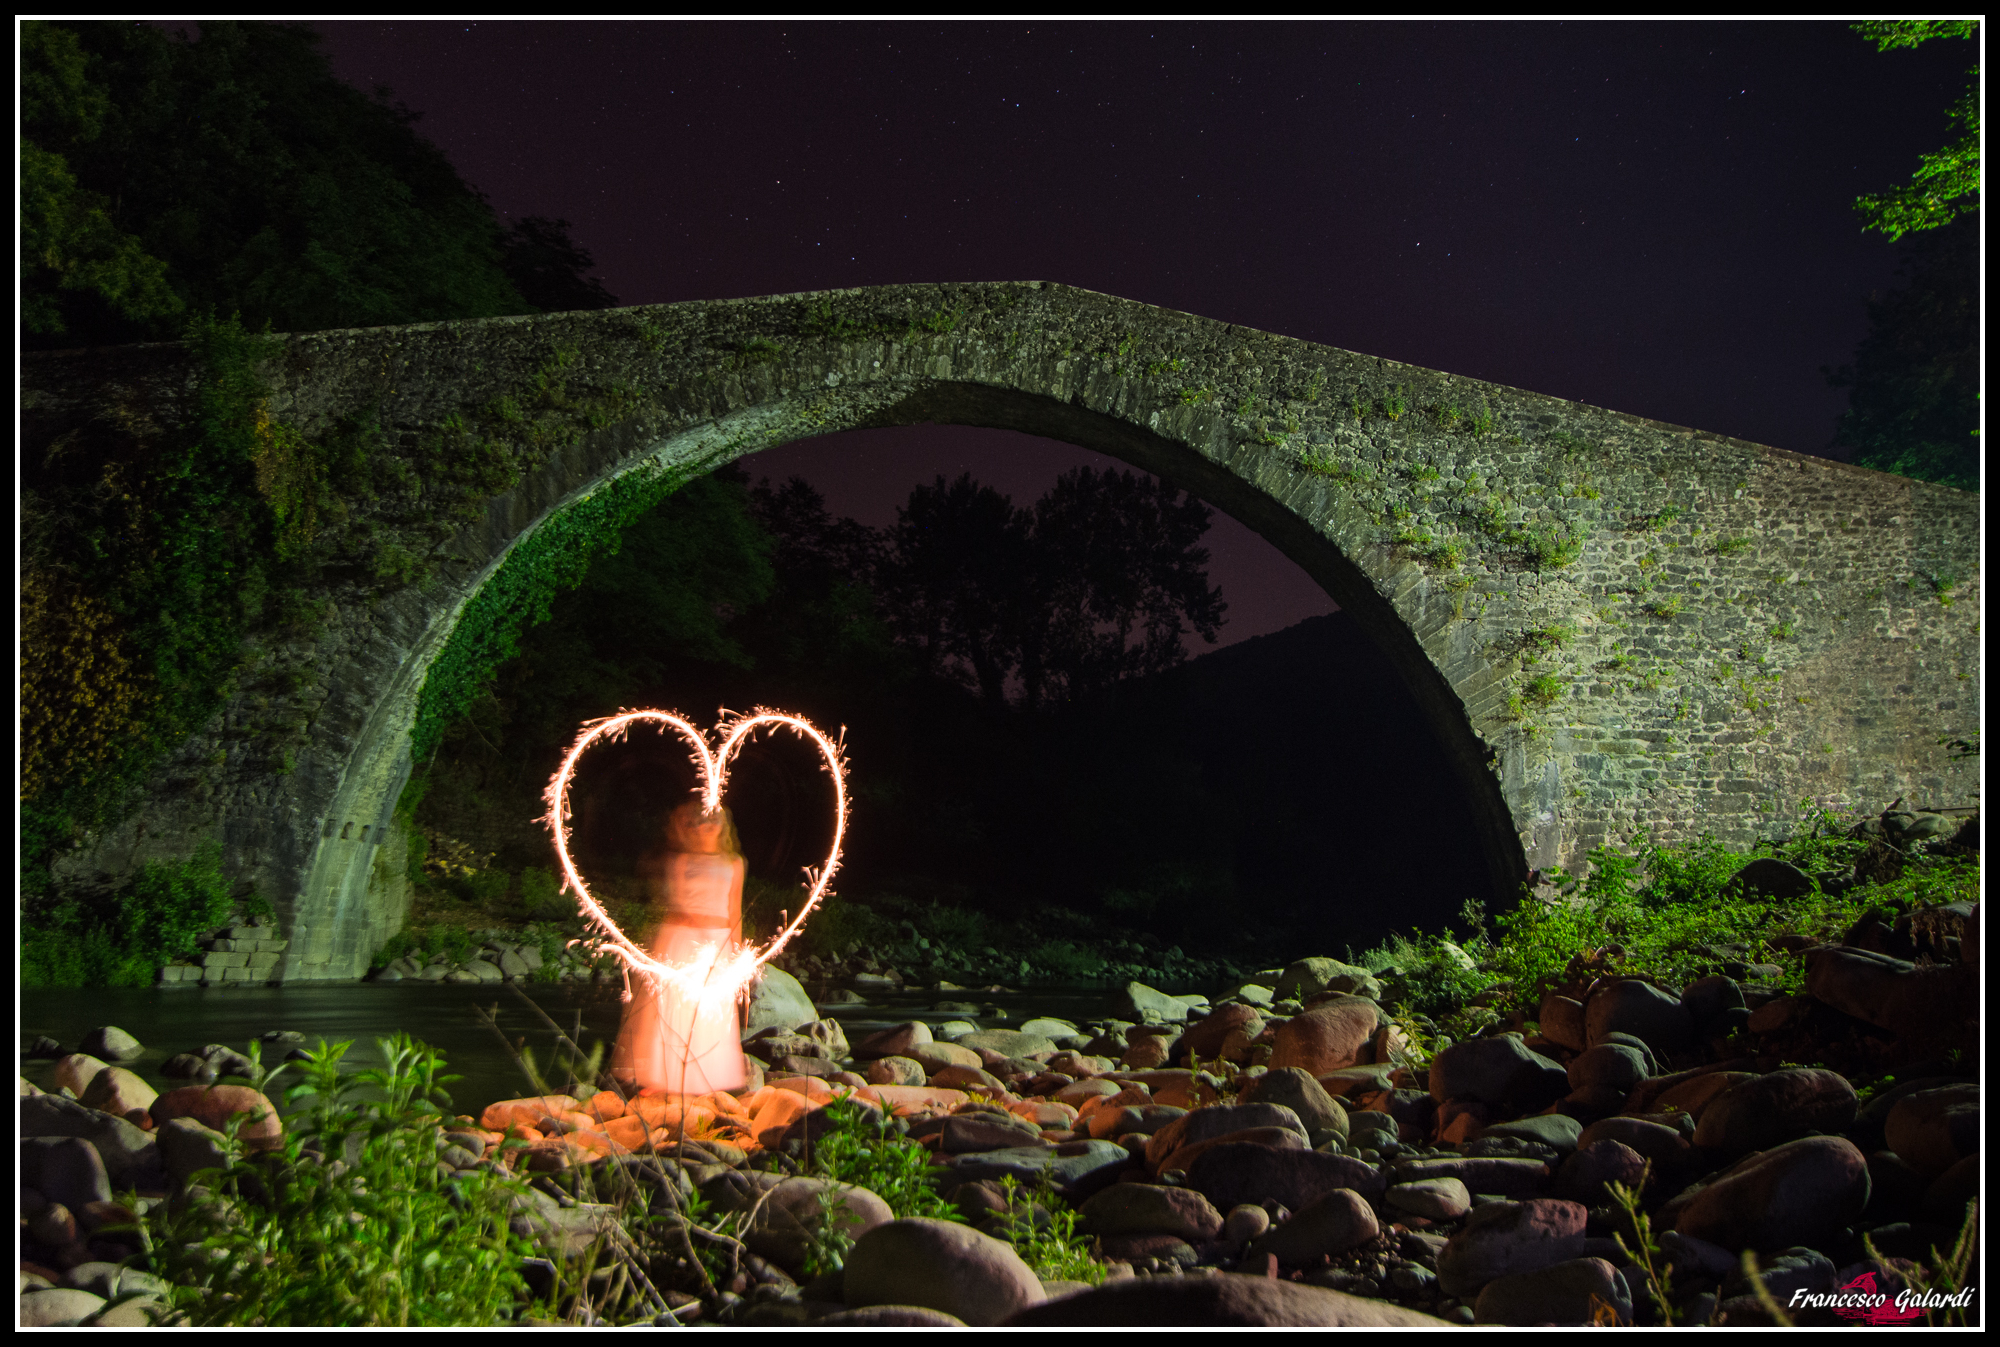 Lightpainting at the castruccio bridge ...